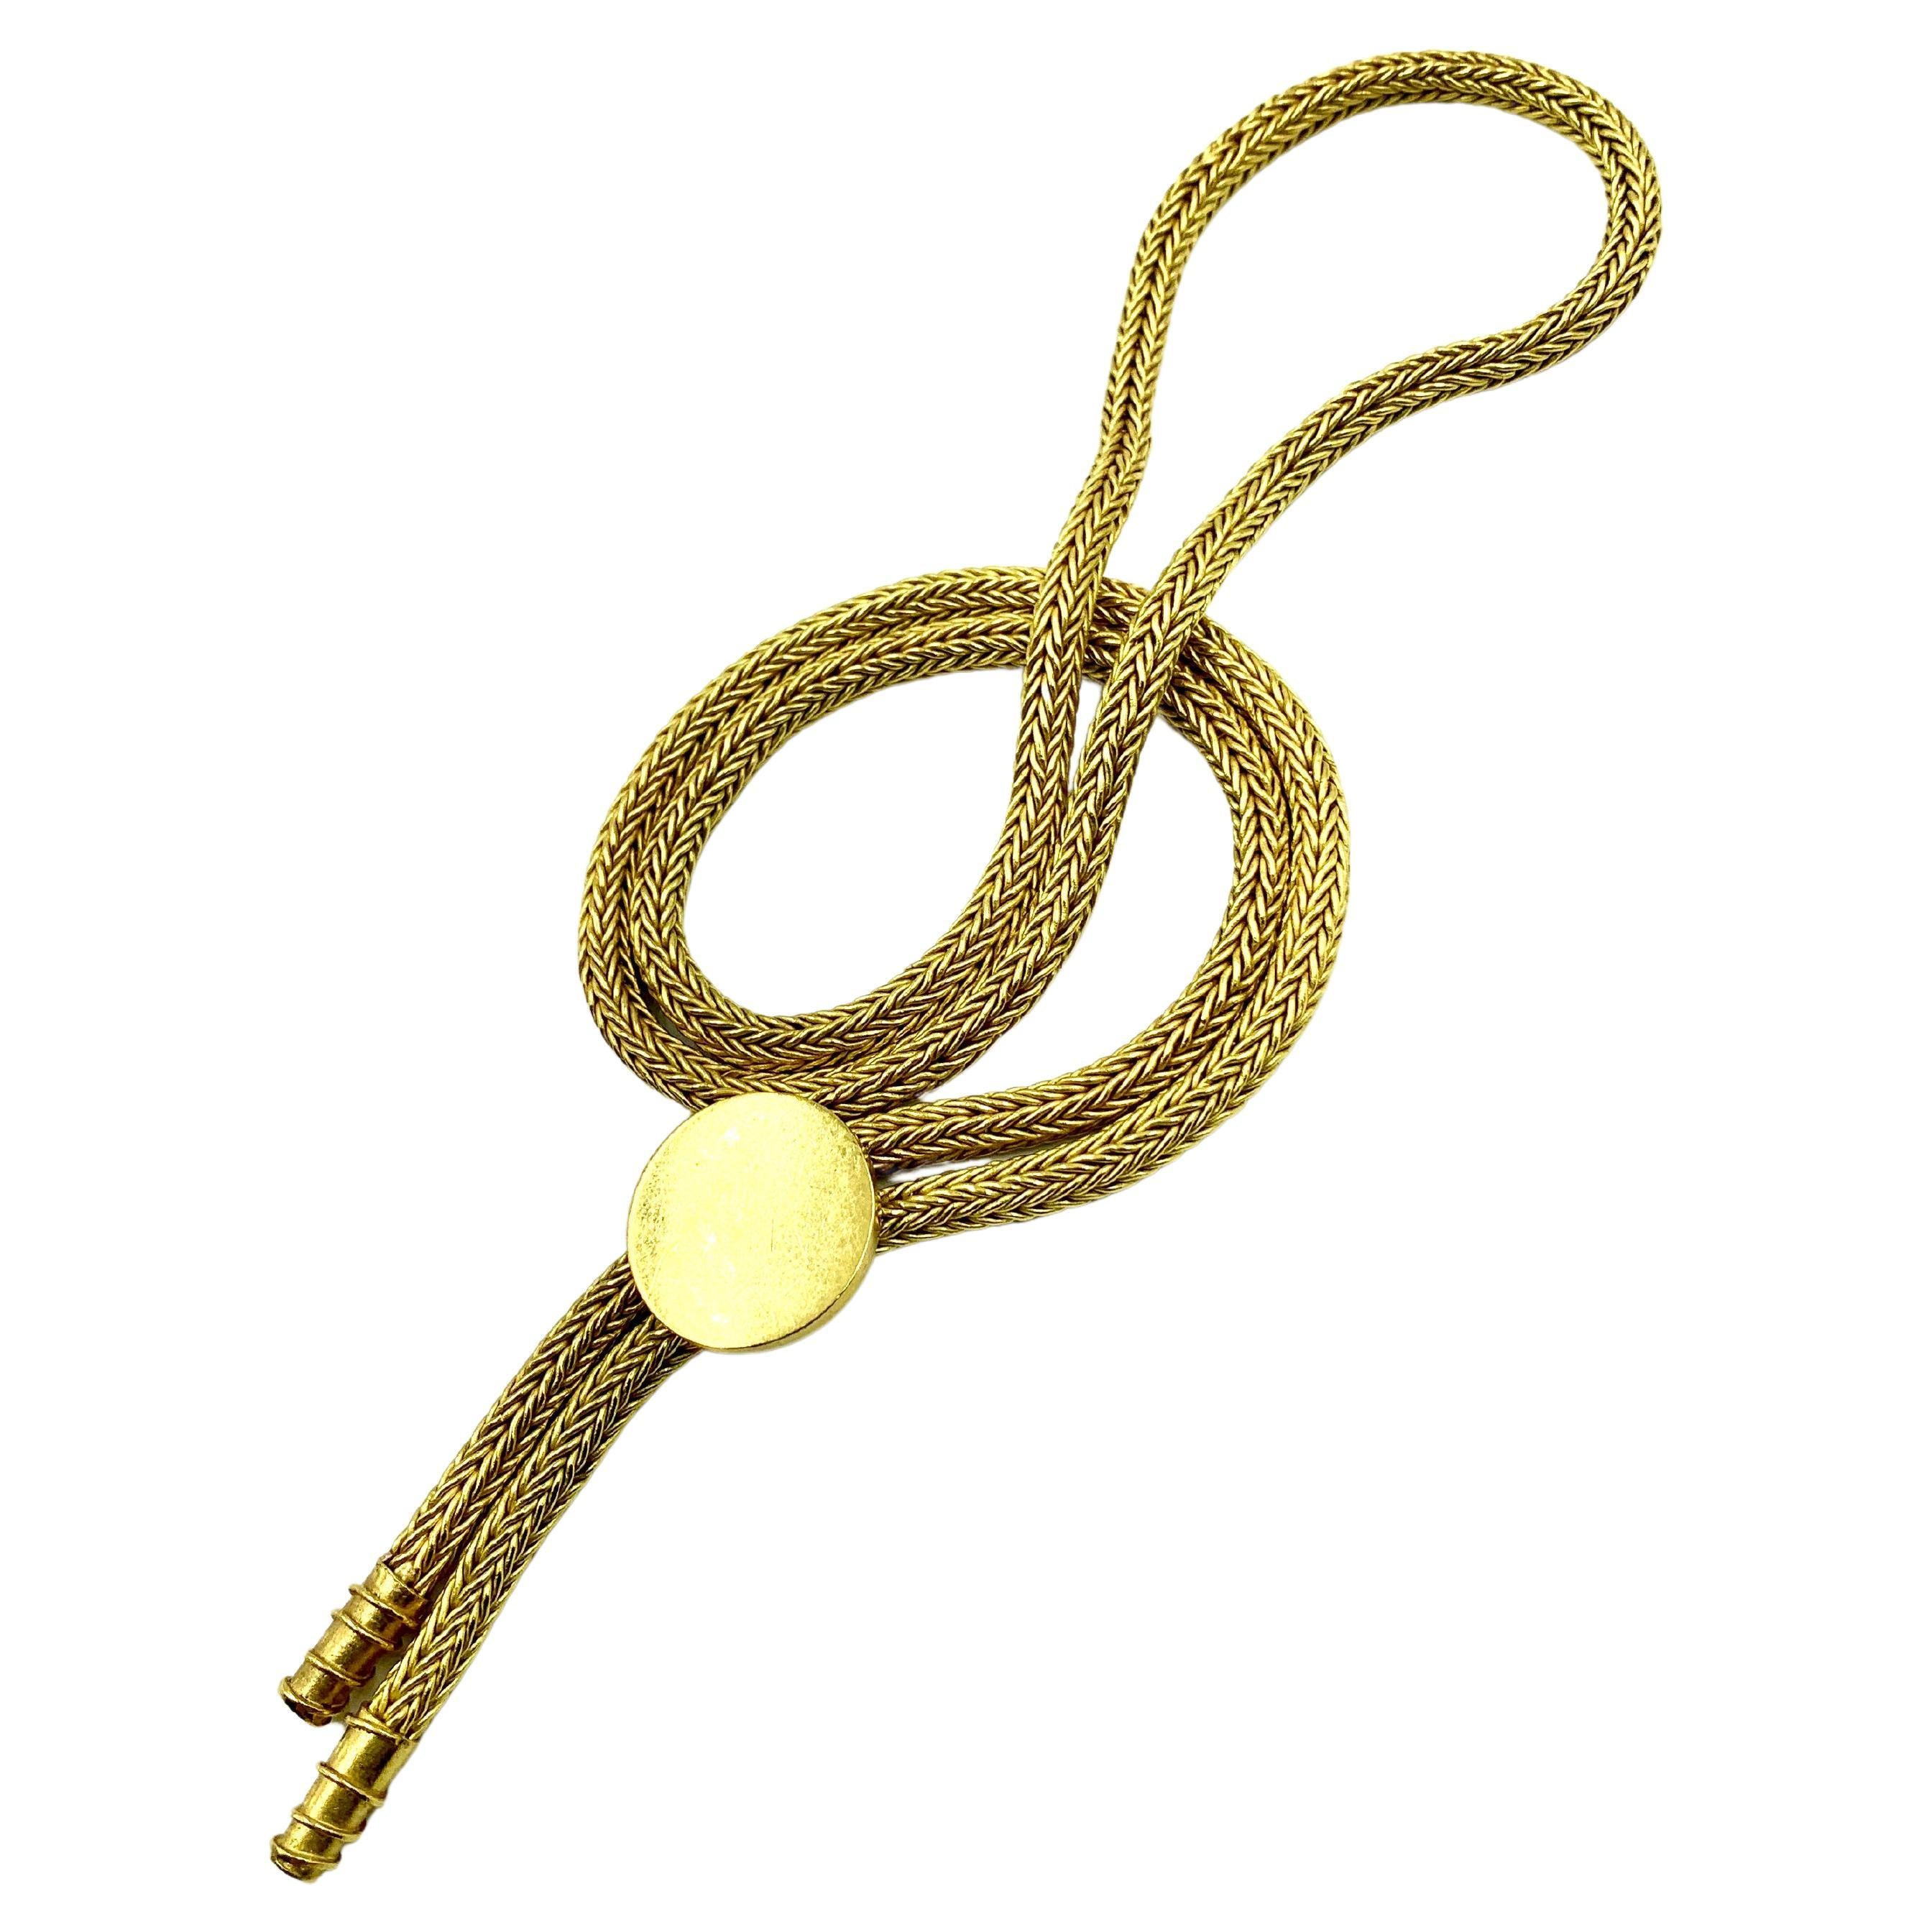 Rare Cowboy Core Vintage 22K Yellow Gold Bolo Tie Necklace by Luna Felix For Sale